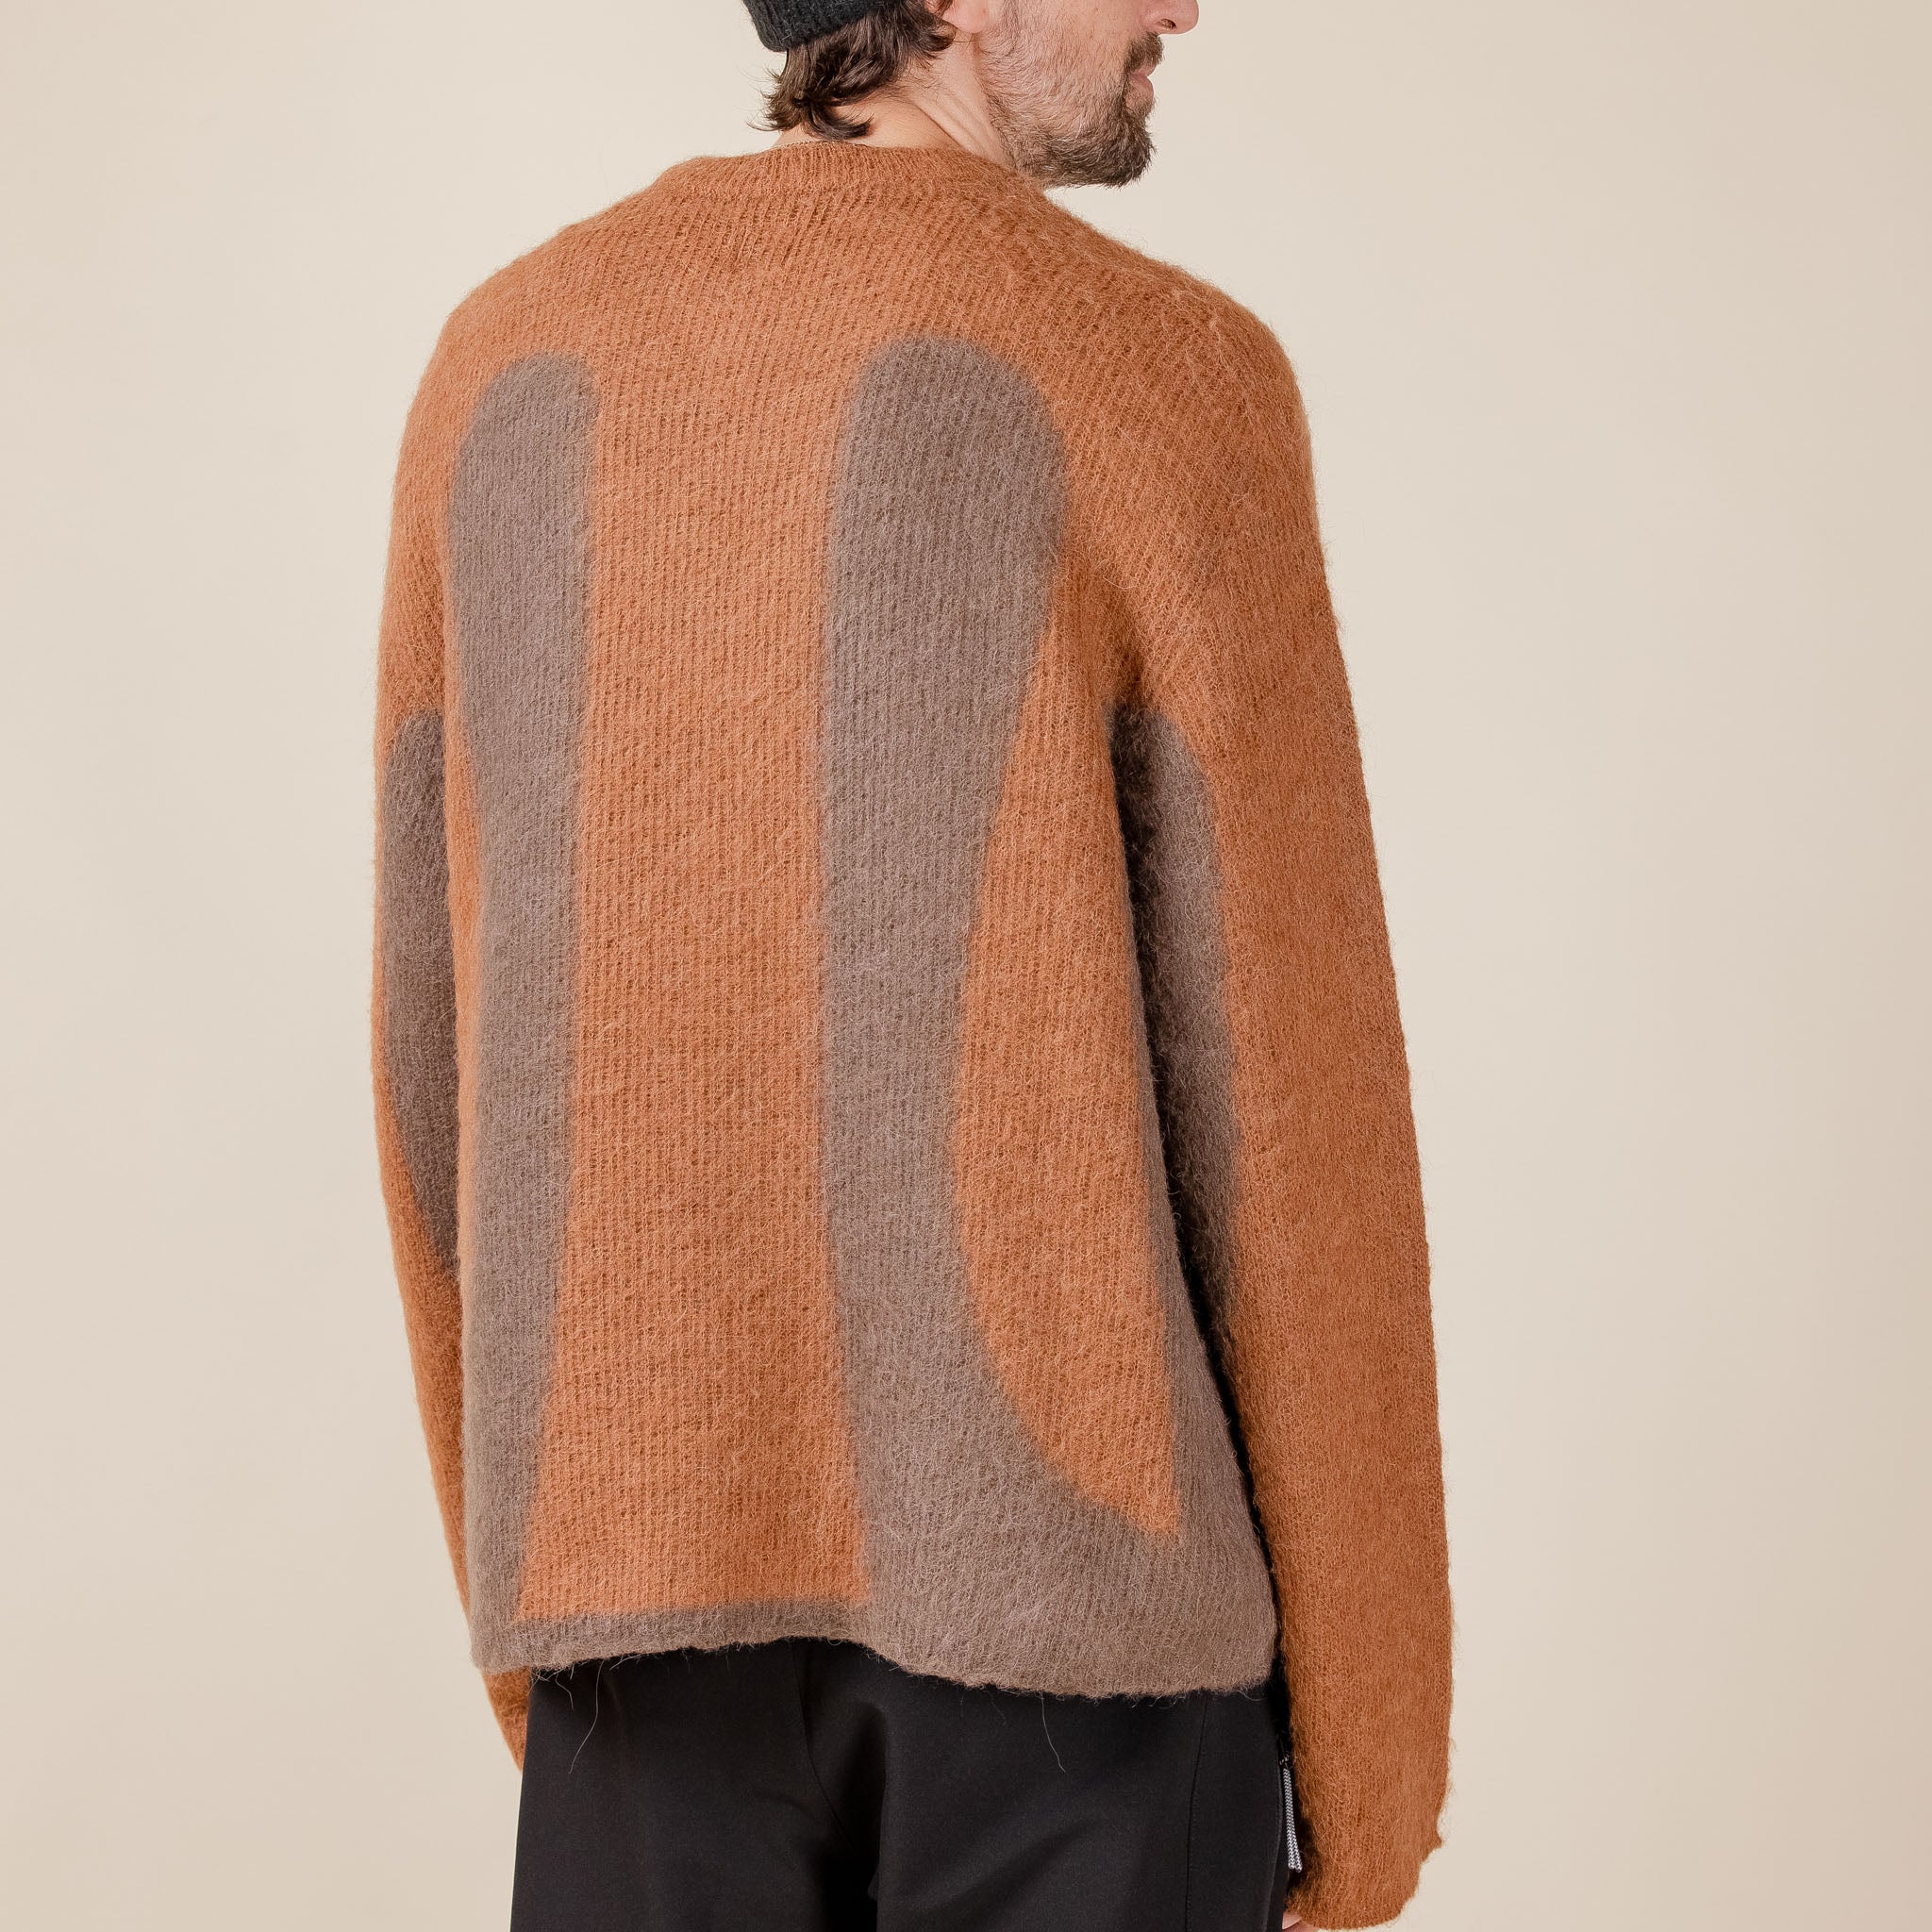 J.L-A.L - Liquid Alpaca Sweater - Grey / Brown